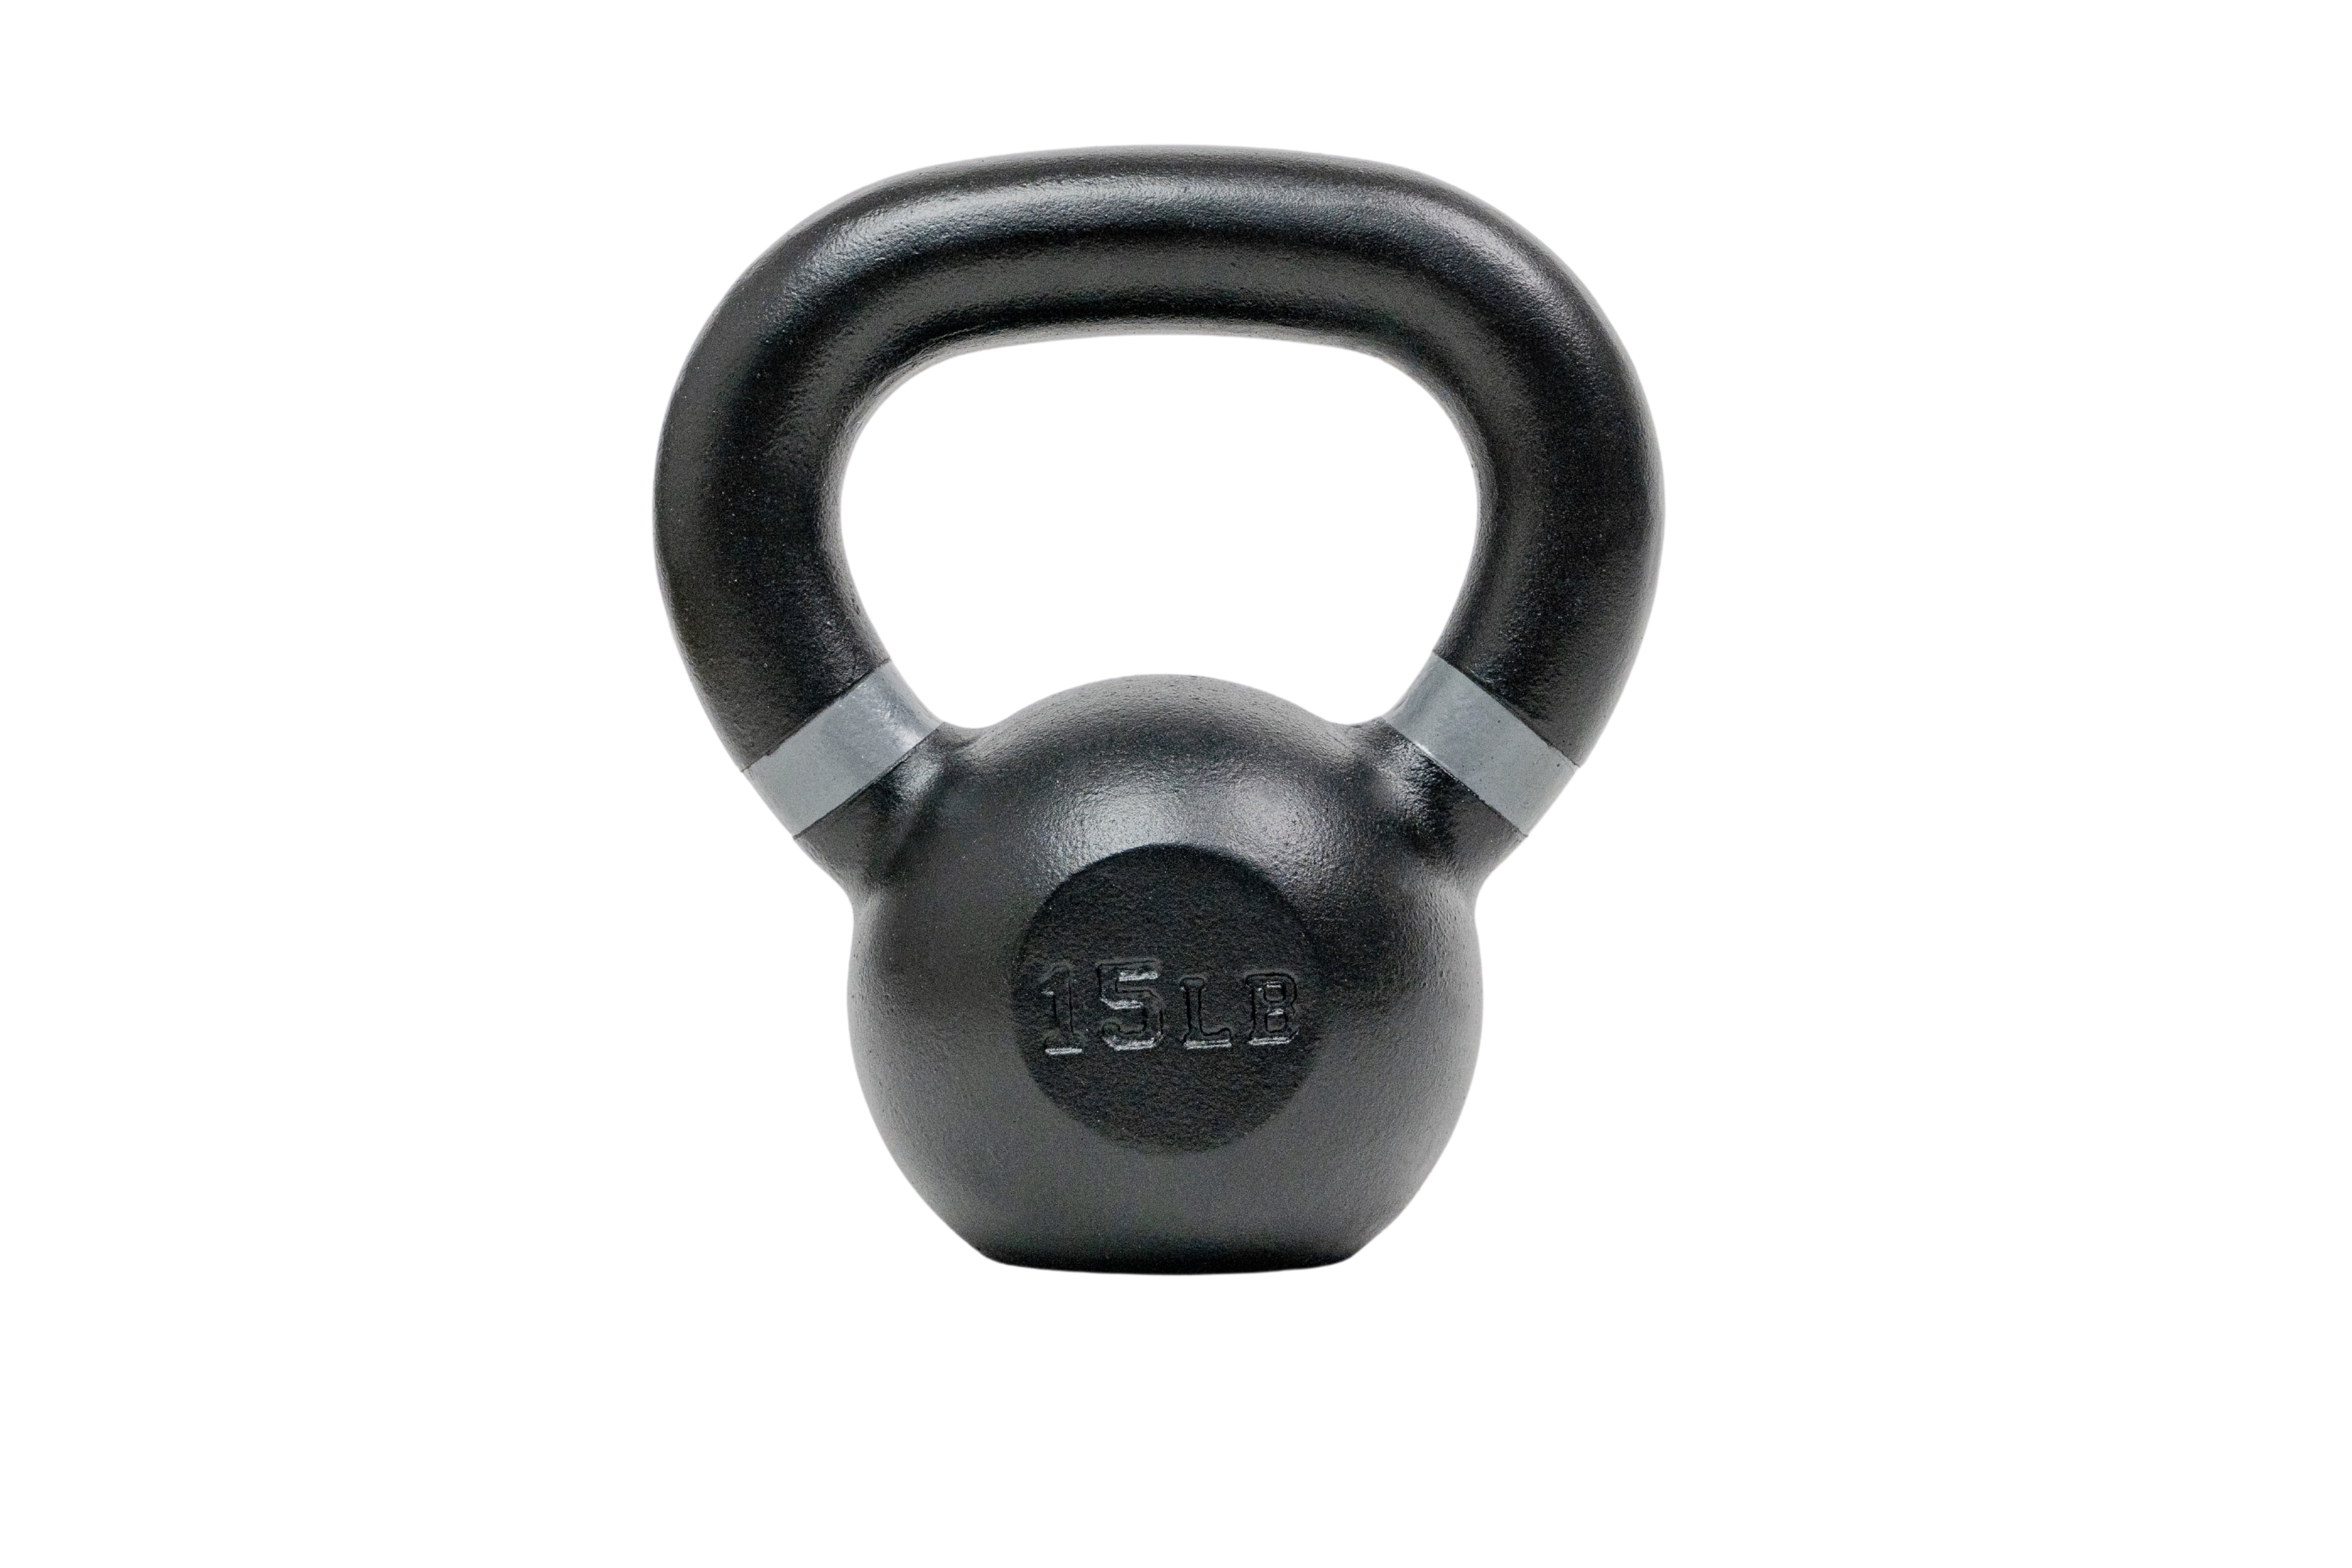 Tru Grit Fitness 15 lb Cast Iron Kettlebell Weight - Walmart.com